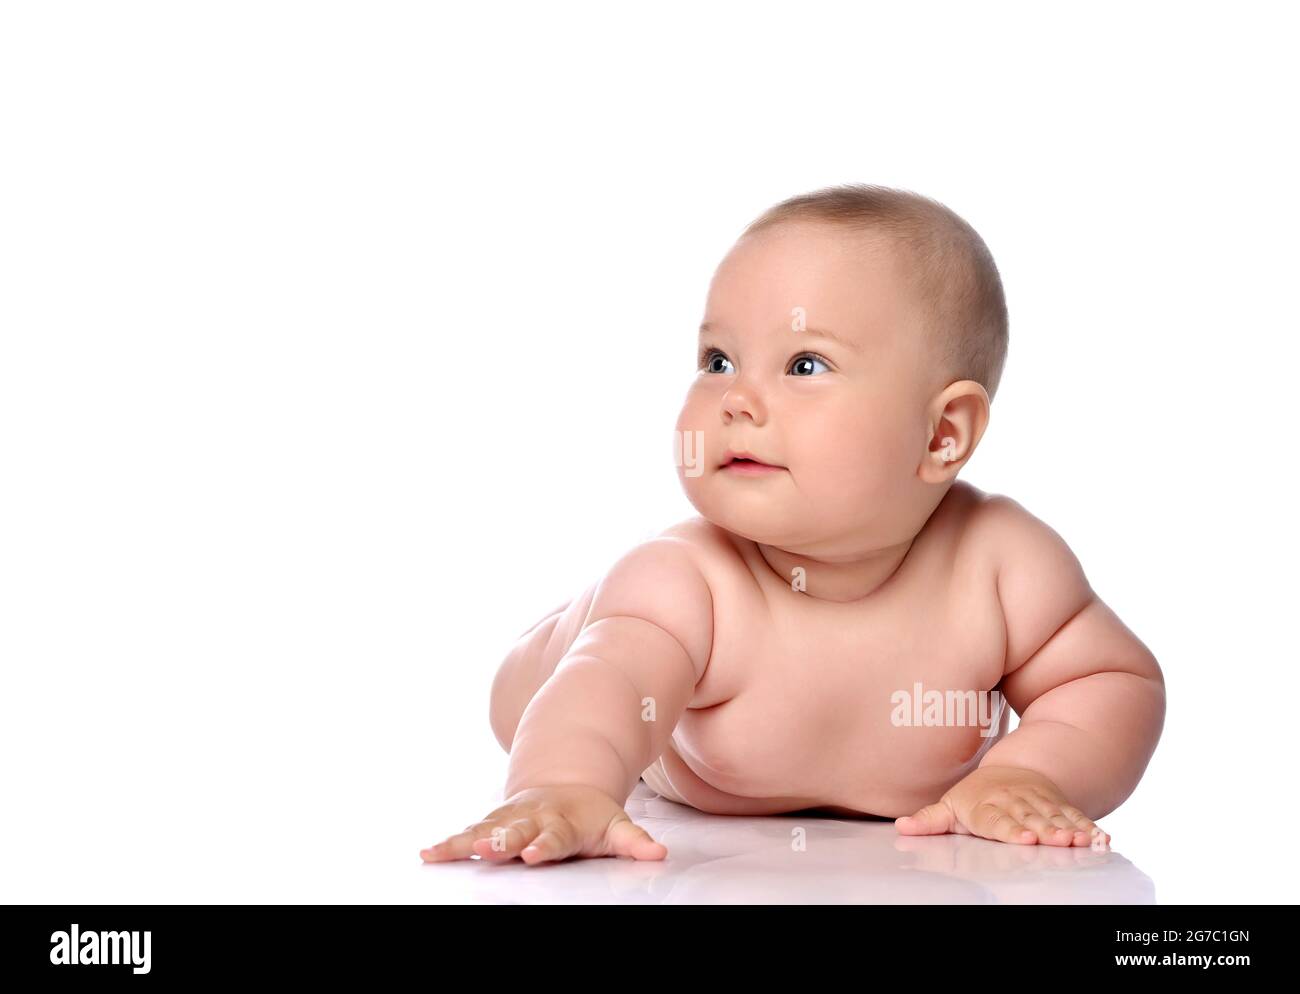 Kleinkind Kind Baby Mädchen Kind in Windel liegt auf ihrem Bauch halten Arm ausgestreckt und schaut zur Seite Stockfoto